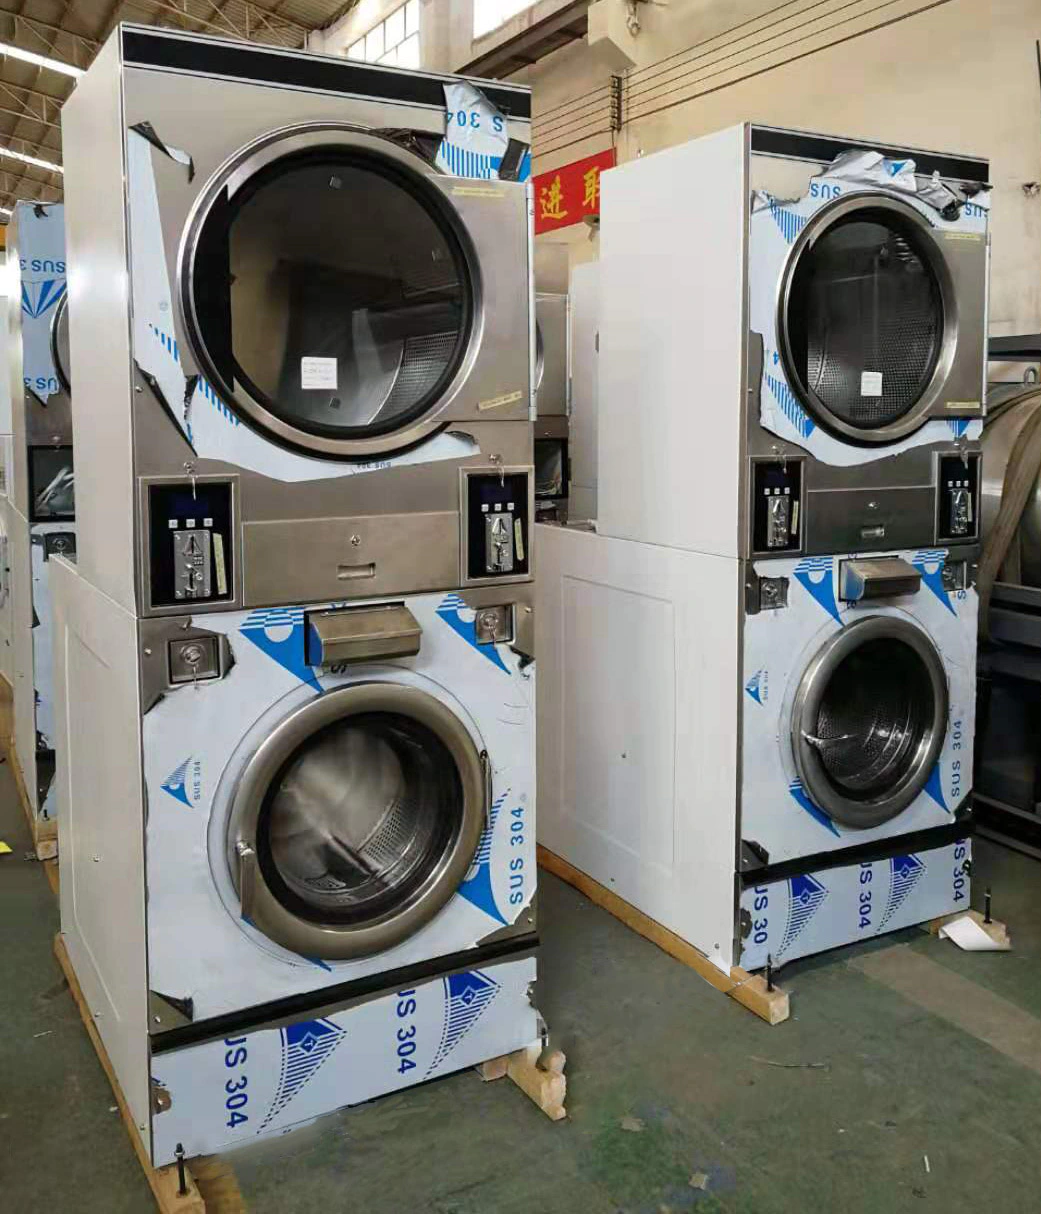 GOWORLD convenient self laundry machine manufacturer for laundry shop